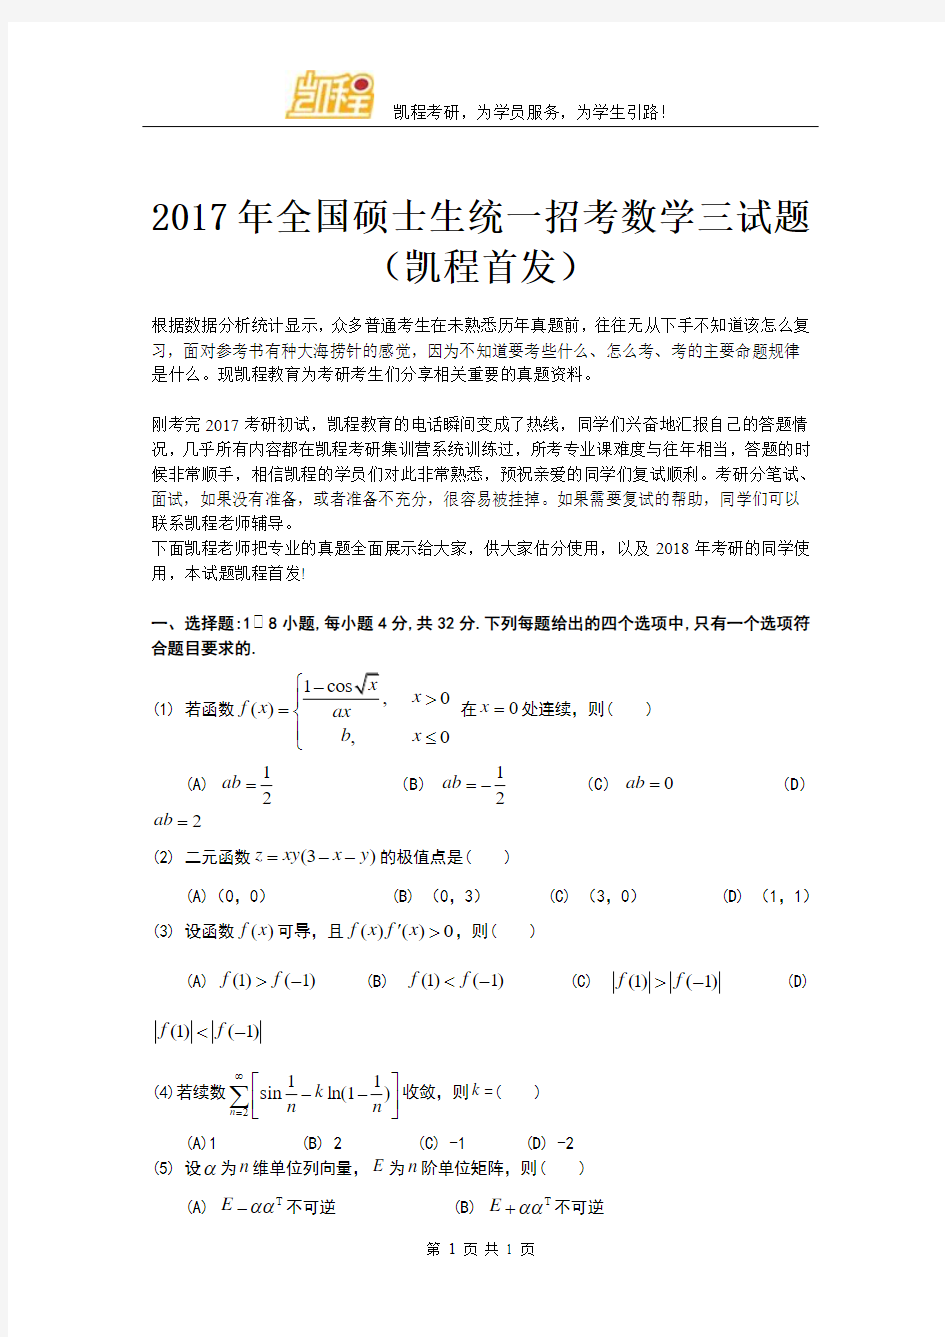 2017年考研数学三试题(凯程首发)